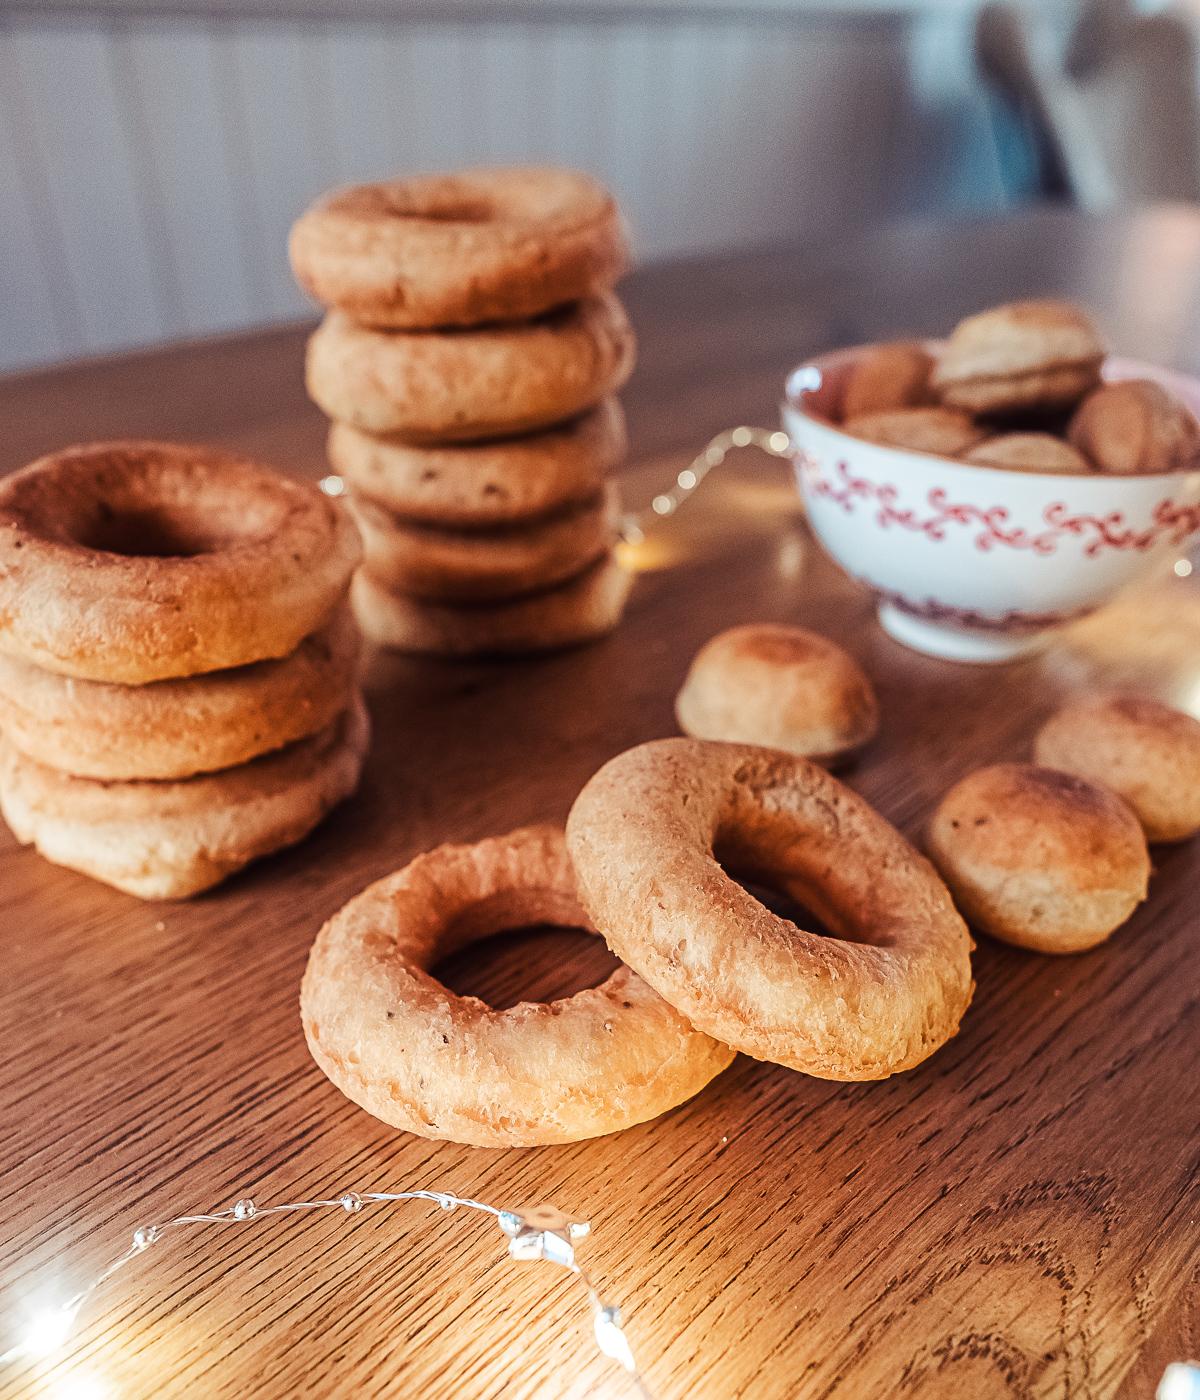 smultringer (Norwegian doughnuts)